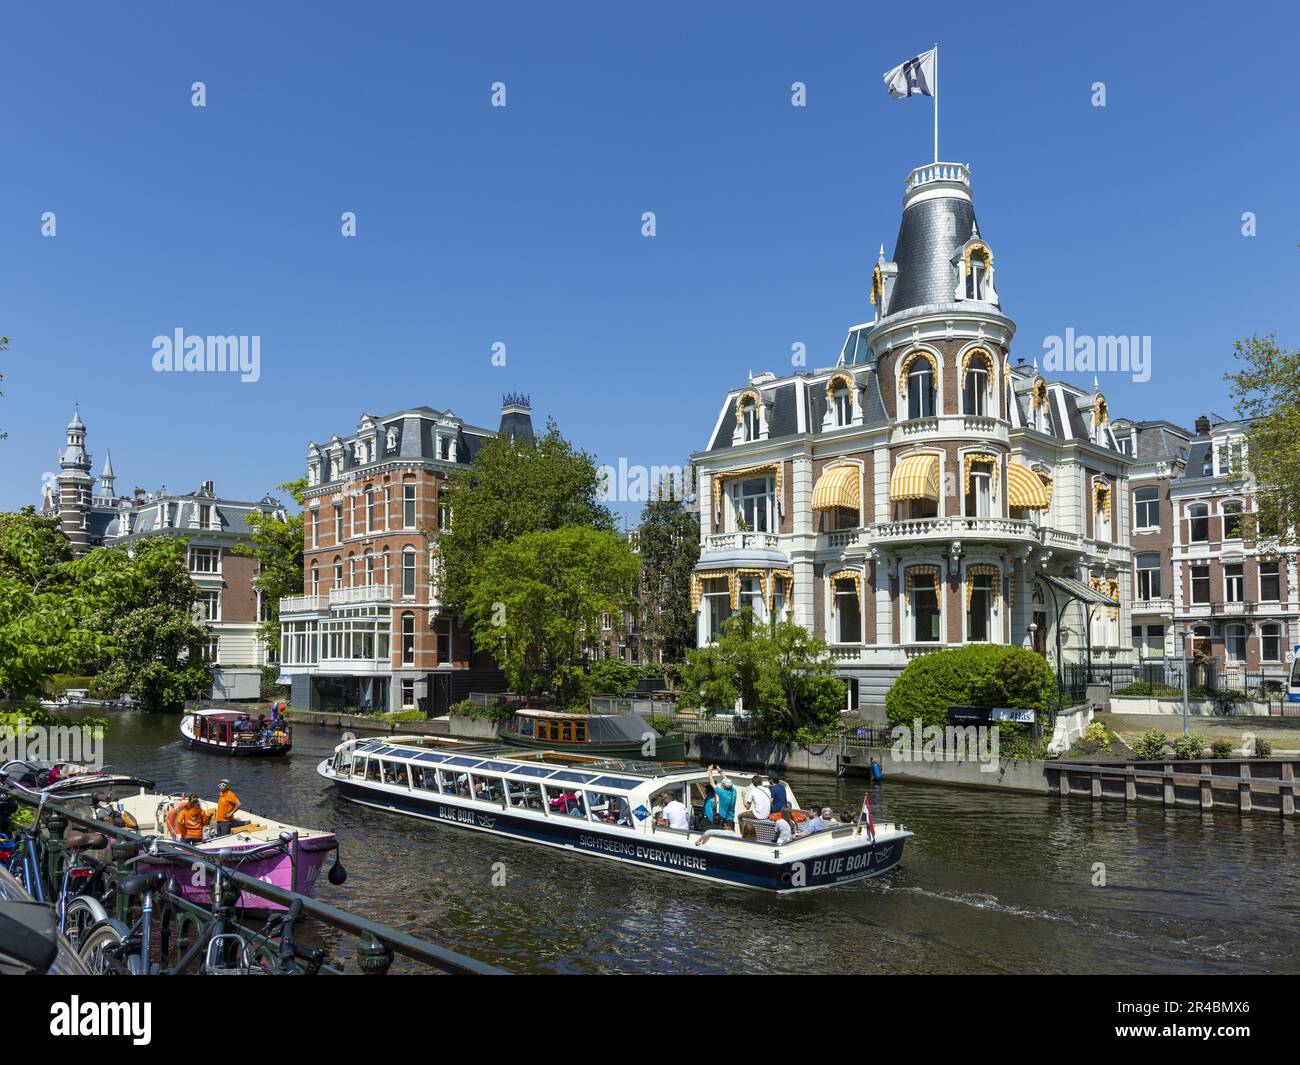 Barche su un canale, Amsterdam, capitale dei Paesi Bassi, Olanda, Europa occidentale Foto Stock